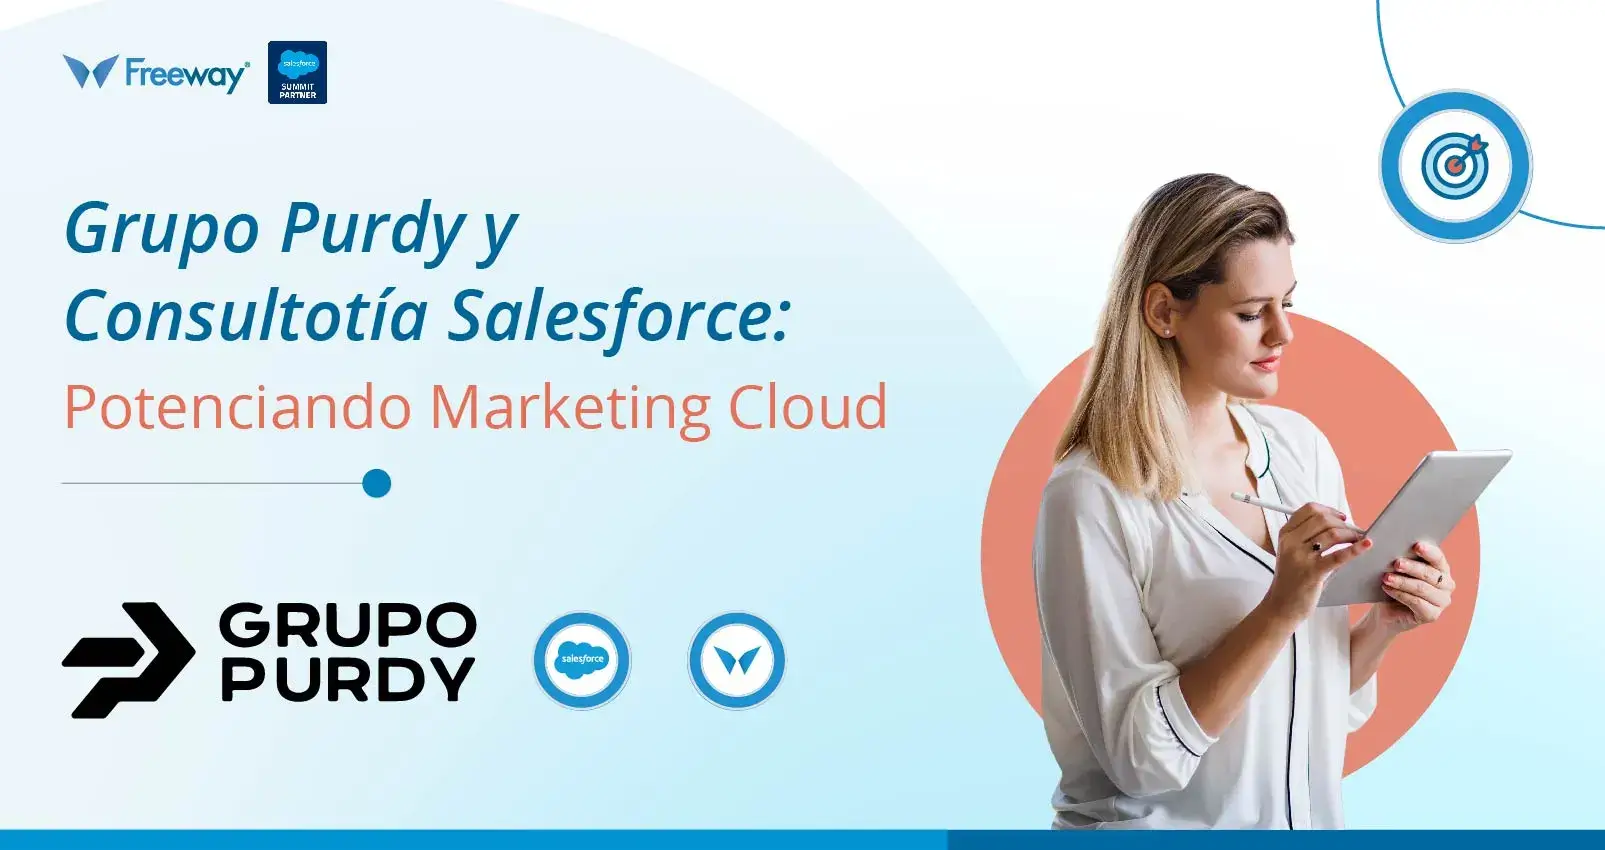 Optimizando el Potencial de Marketing Cloud: El Éxito de Grupo Purdy con Consultoría Salesforce de Freeway